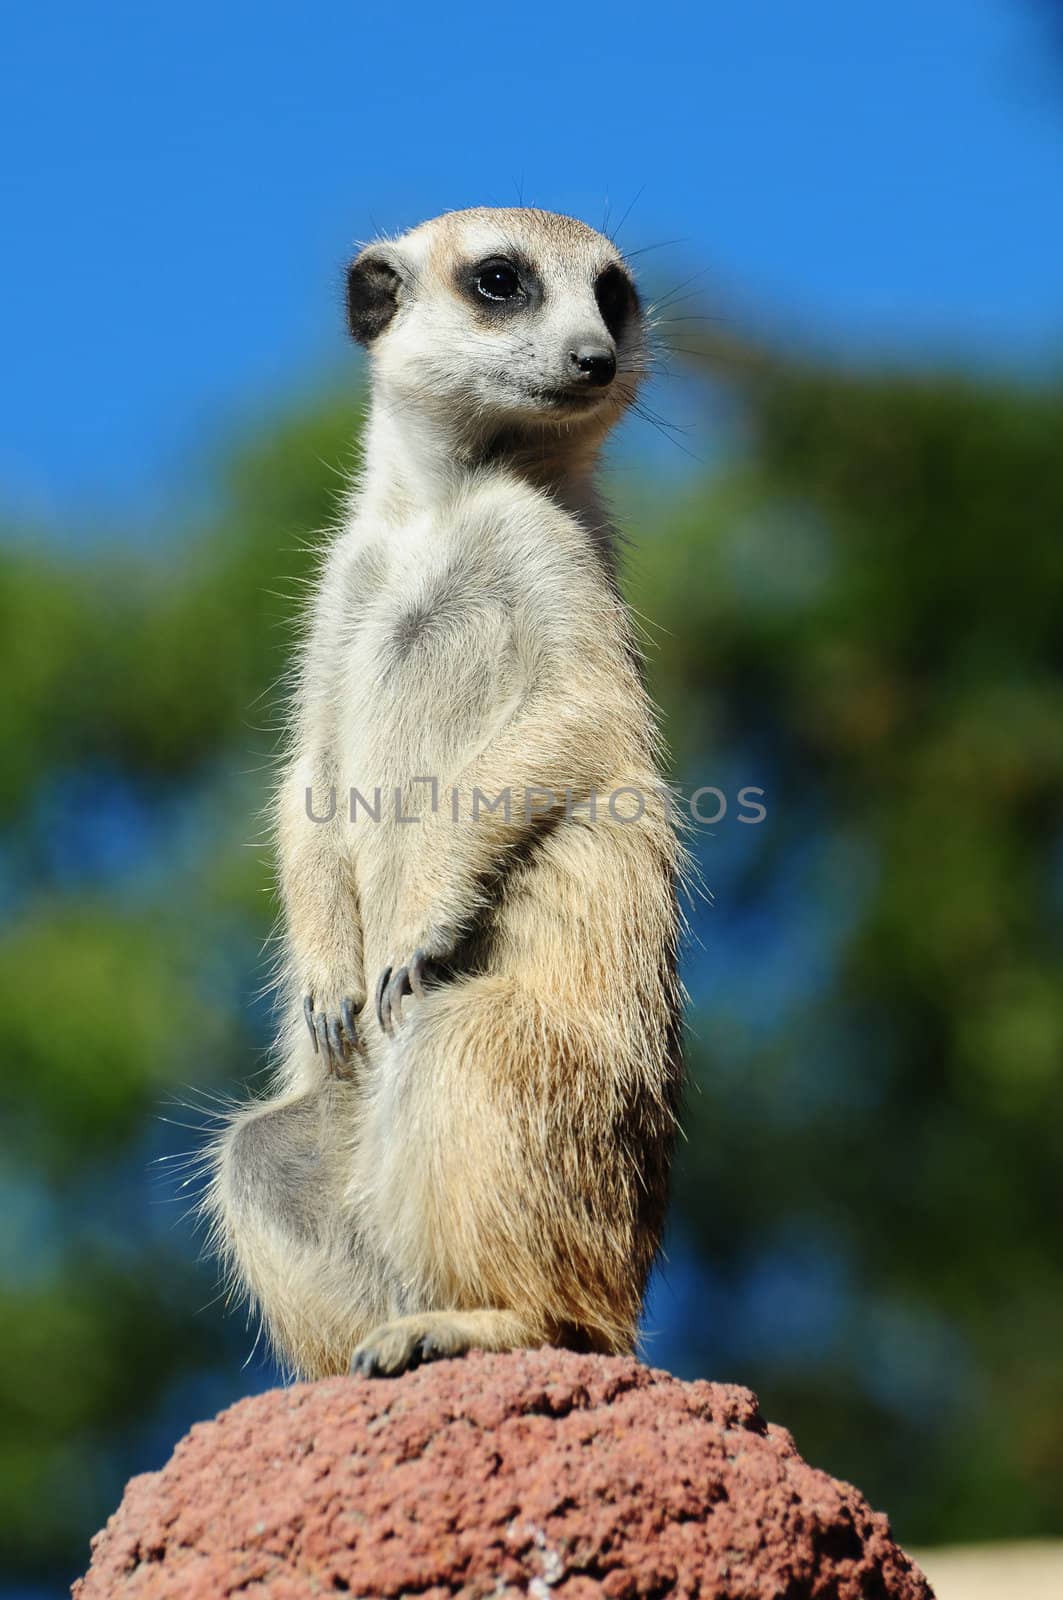 A meerkat portrait against blue sky background